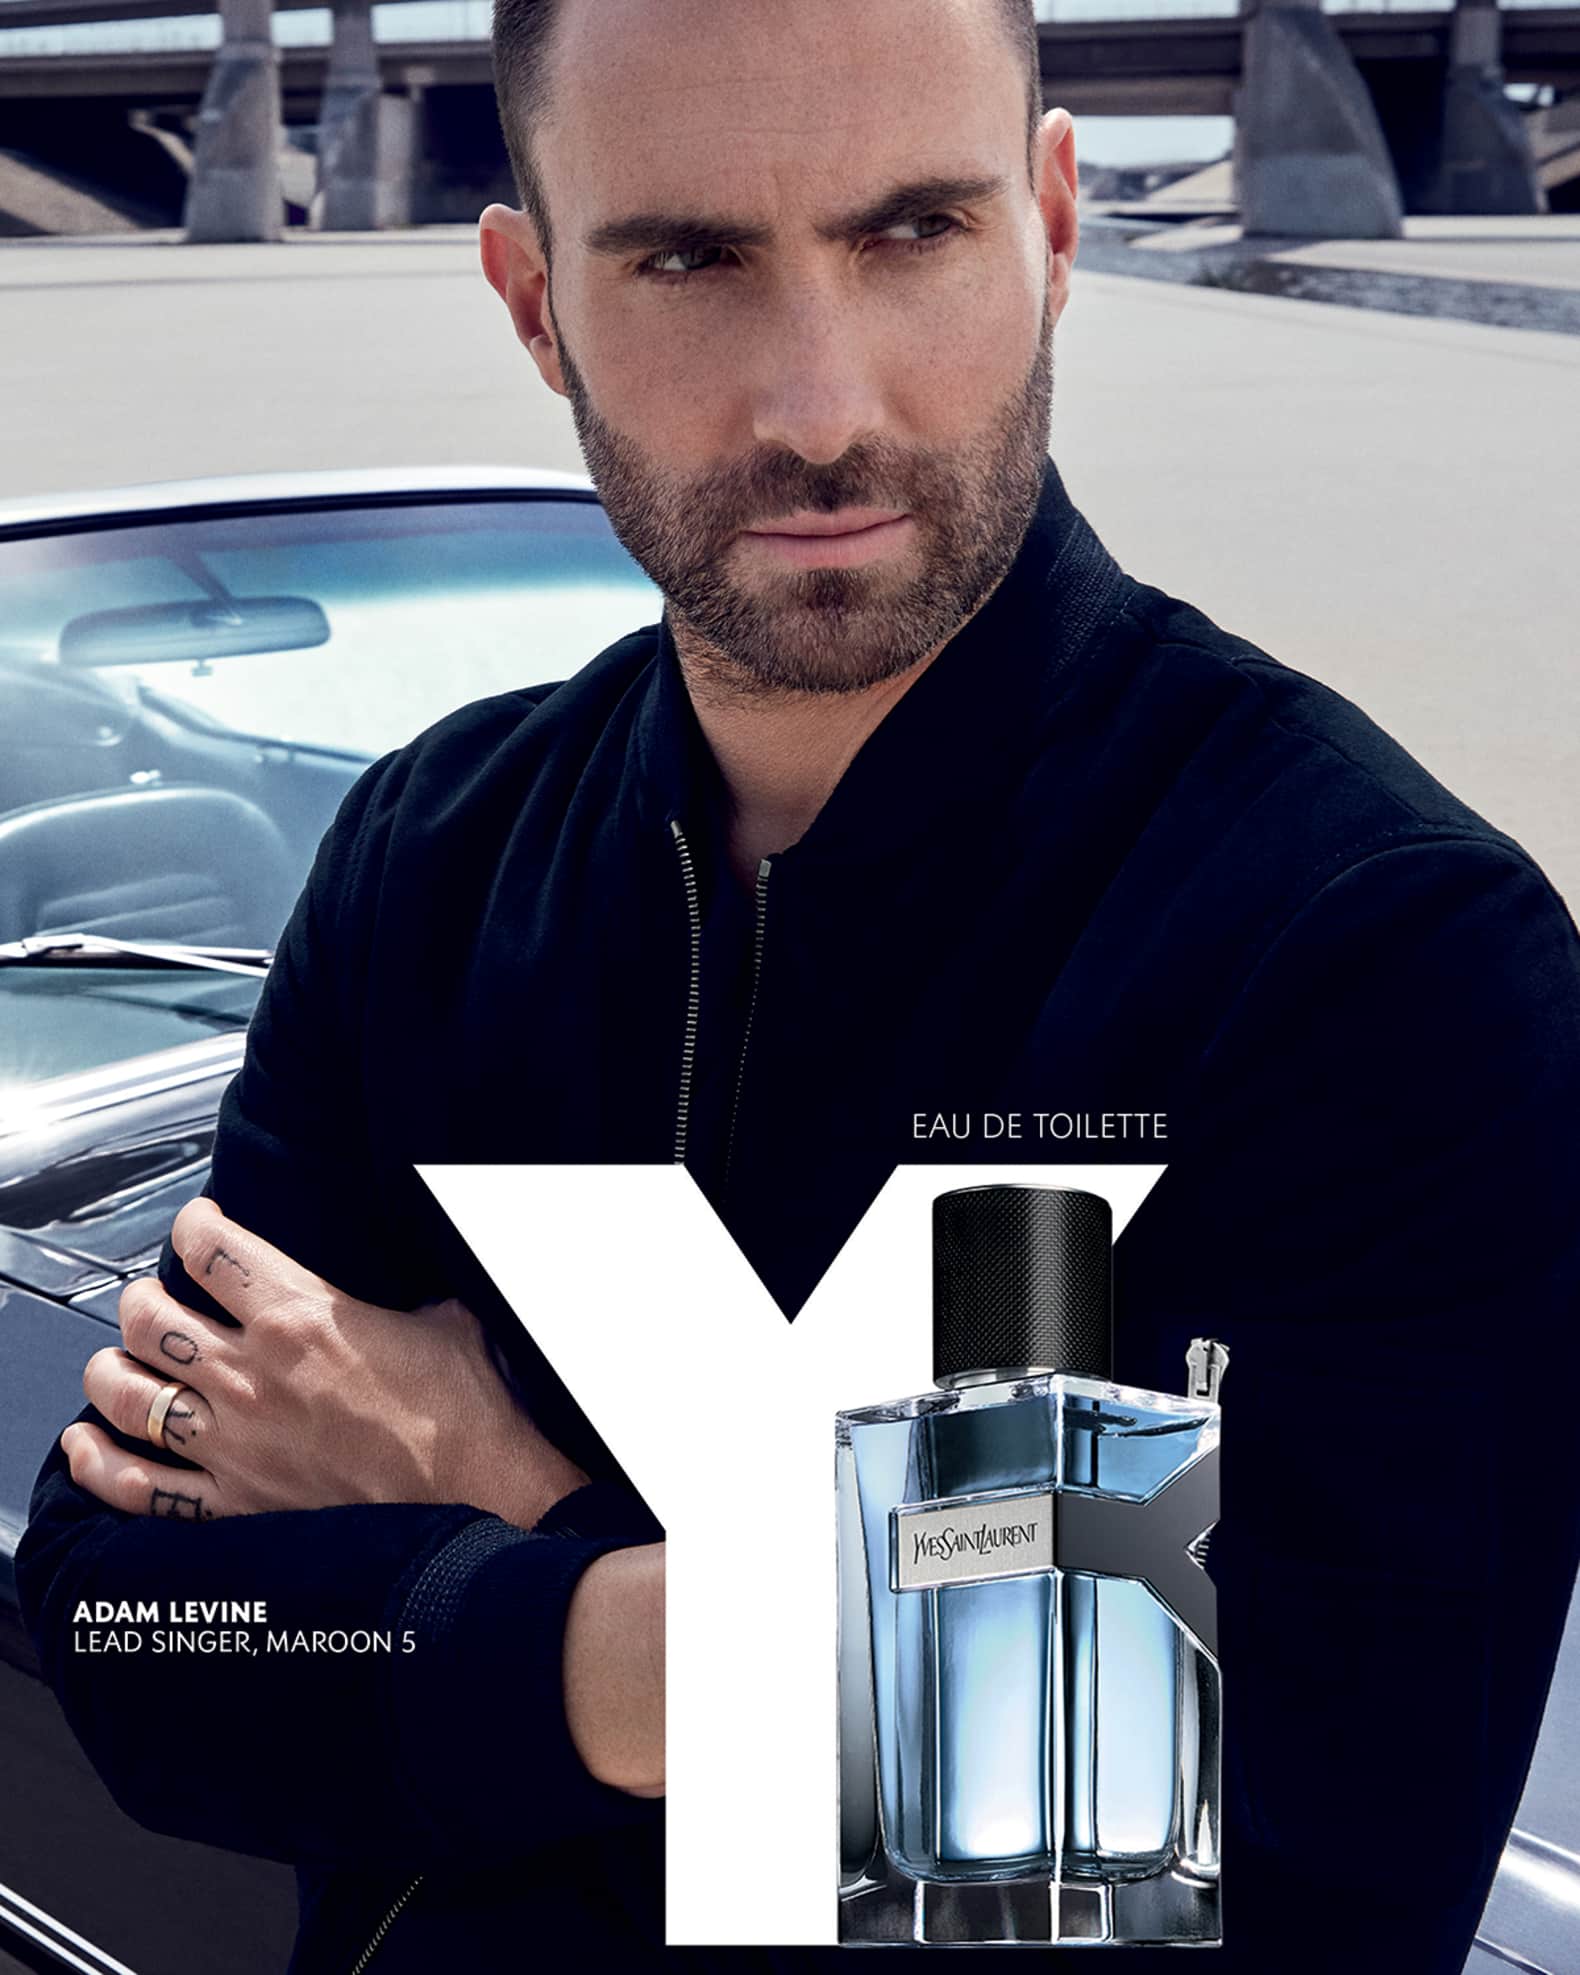 Yves Saint Laurent Beaute 3.3 oz. Y Men Eau de Parfum